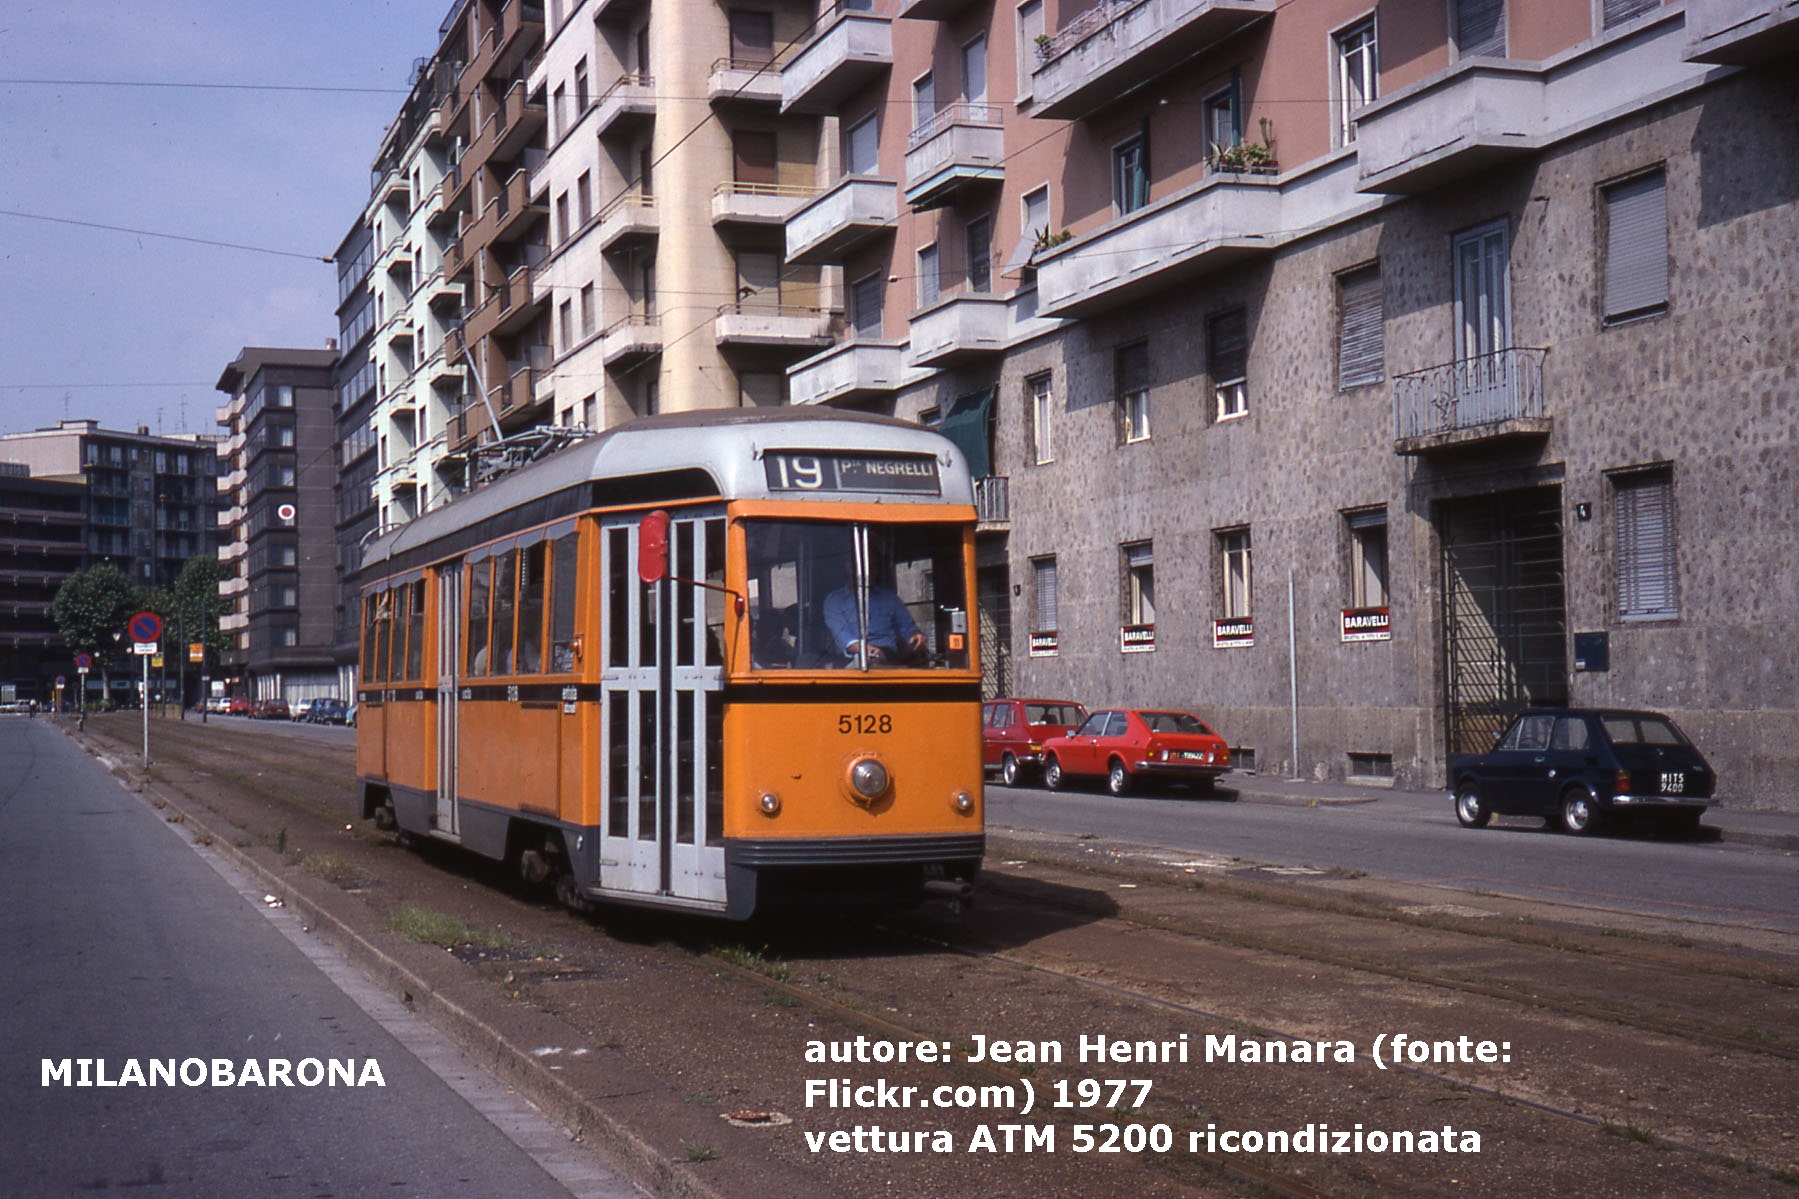 Viale Enrico Boezio, vettura ricondizionata serie 5200, doppio sistema di alimentazione elettrica (trolley, in captazione, semipantografo), linea 19.